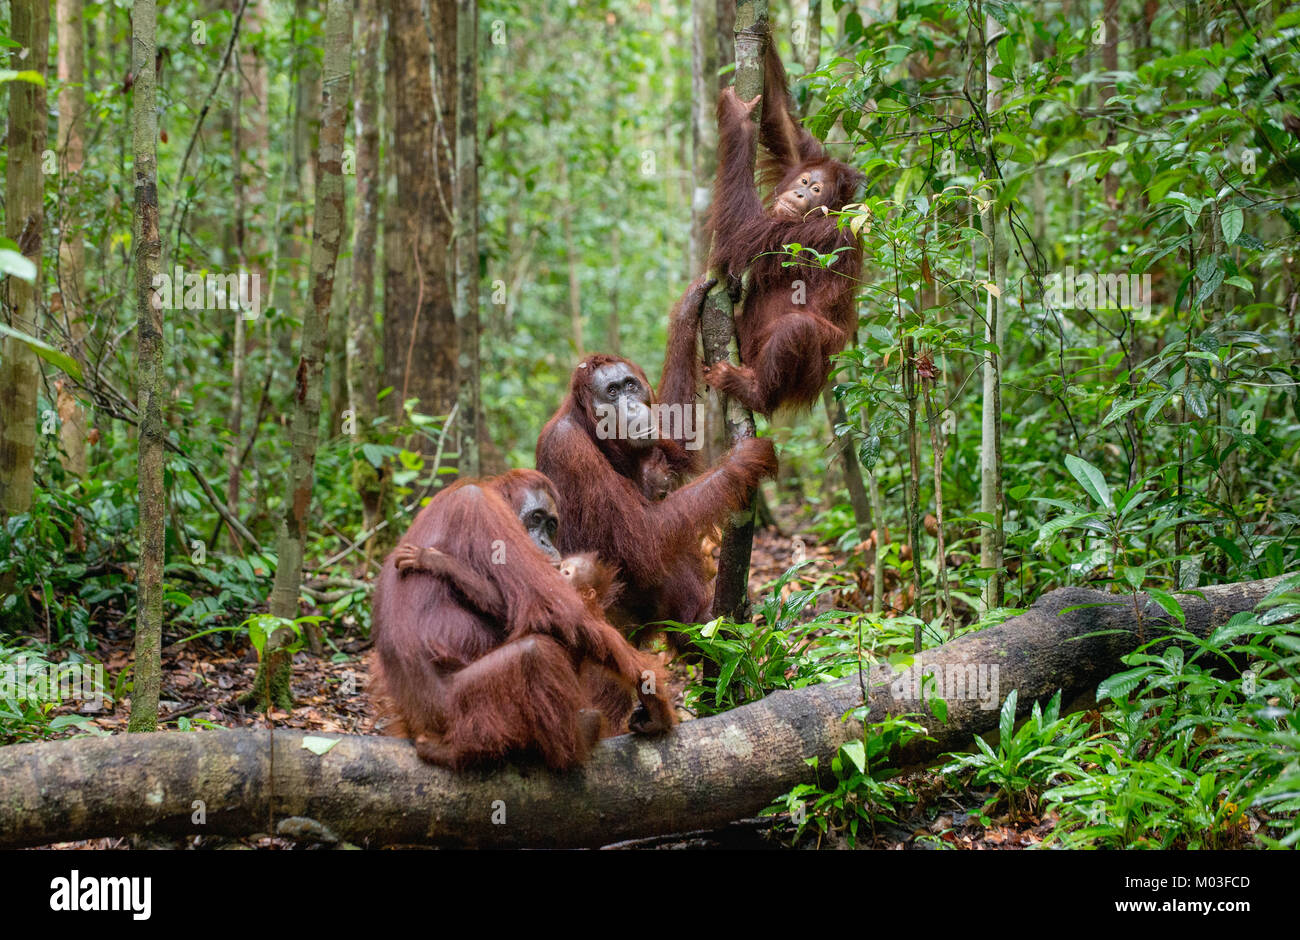 Orang-utans in einen natürlichen Lebensraum. Bornesischen Orang-utan (Pongo pygmaeus wurmbii) in der wilden Natur. Tropischer Regenwald von Borneo. Indonesien Stockfoto